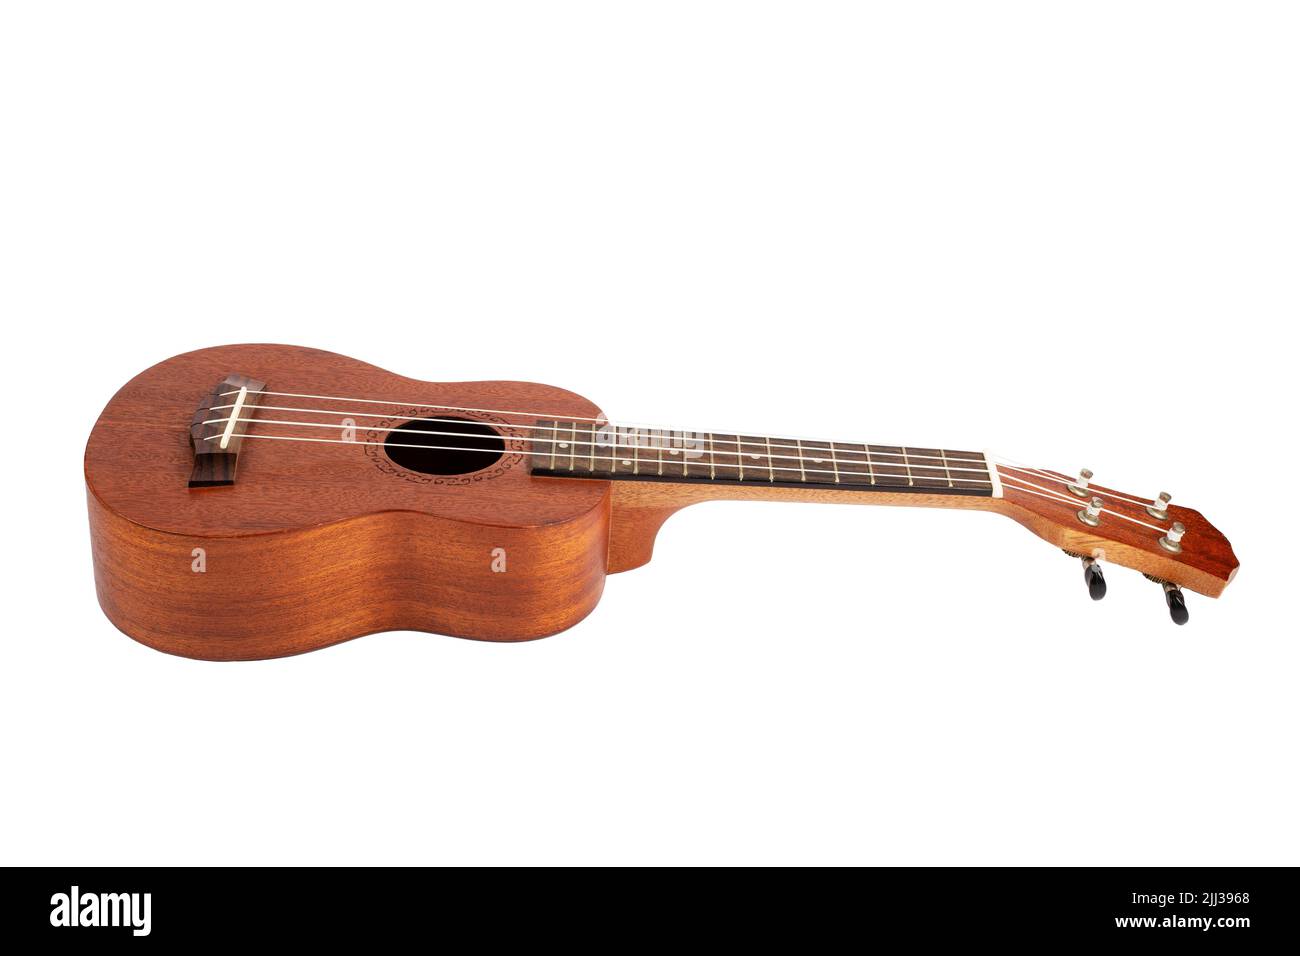 Wooden ukulele guitar isolated over white background Stock Photo